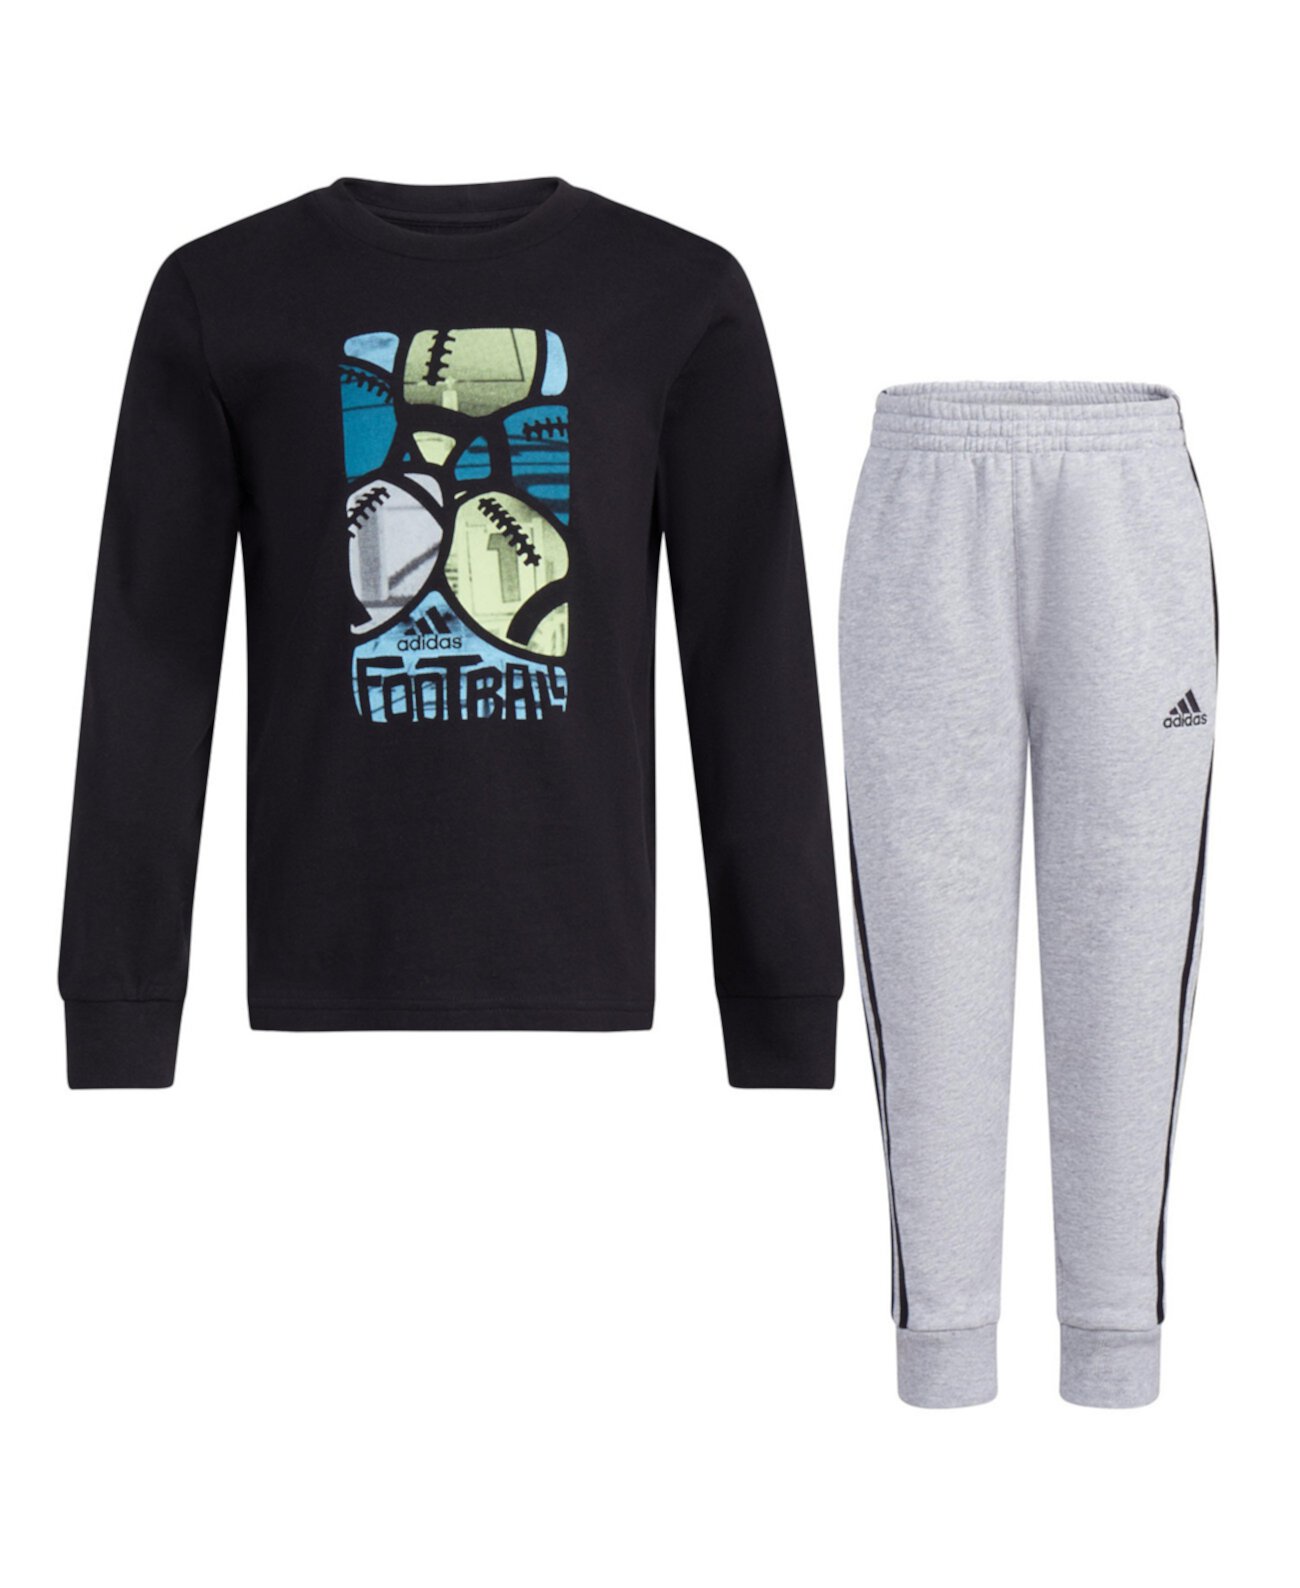 Хлопковая футболка для мальчиков и флисовые спортивные штаны Heather, комплект из 2 предметов Adidas